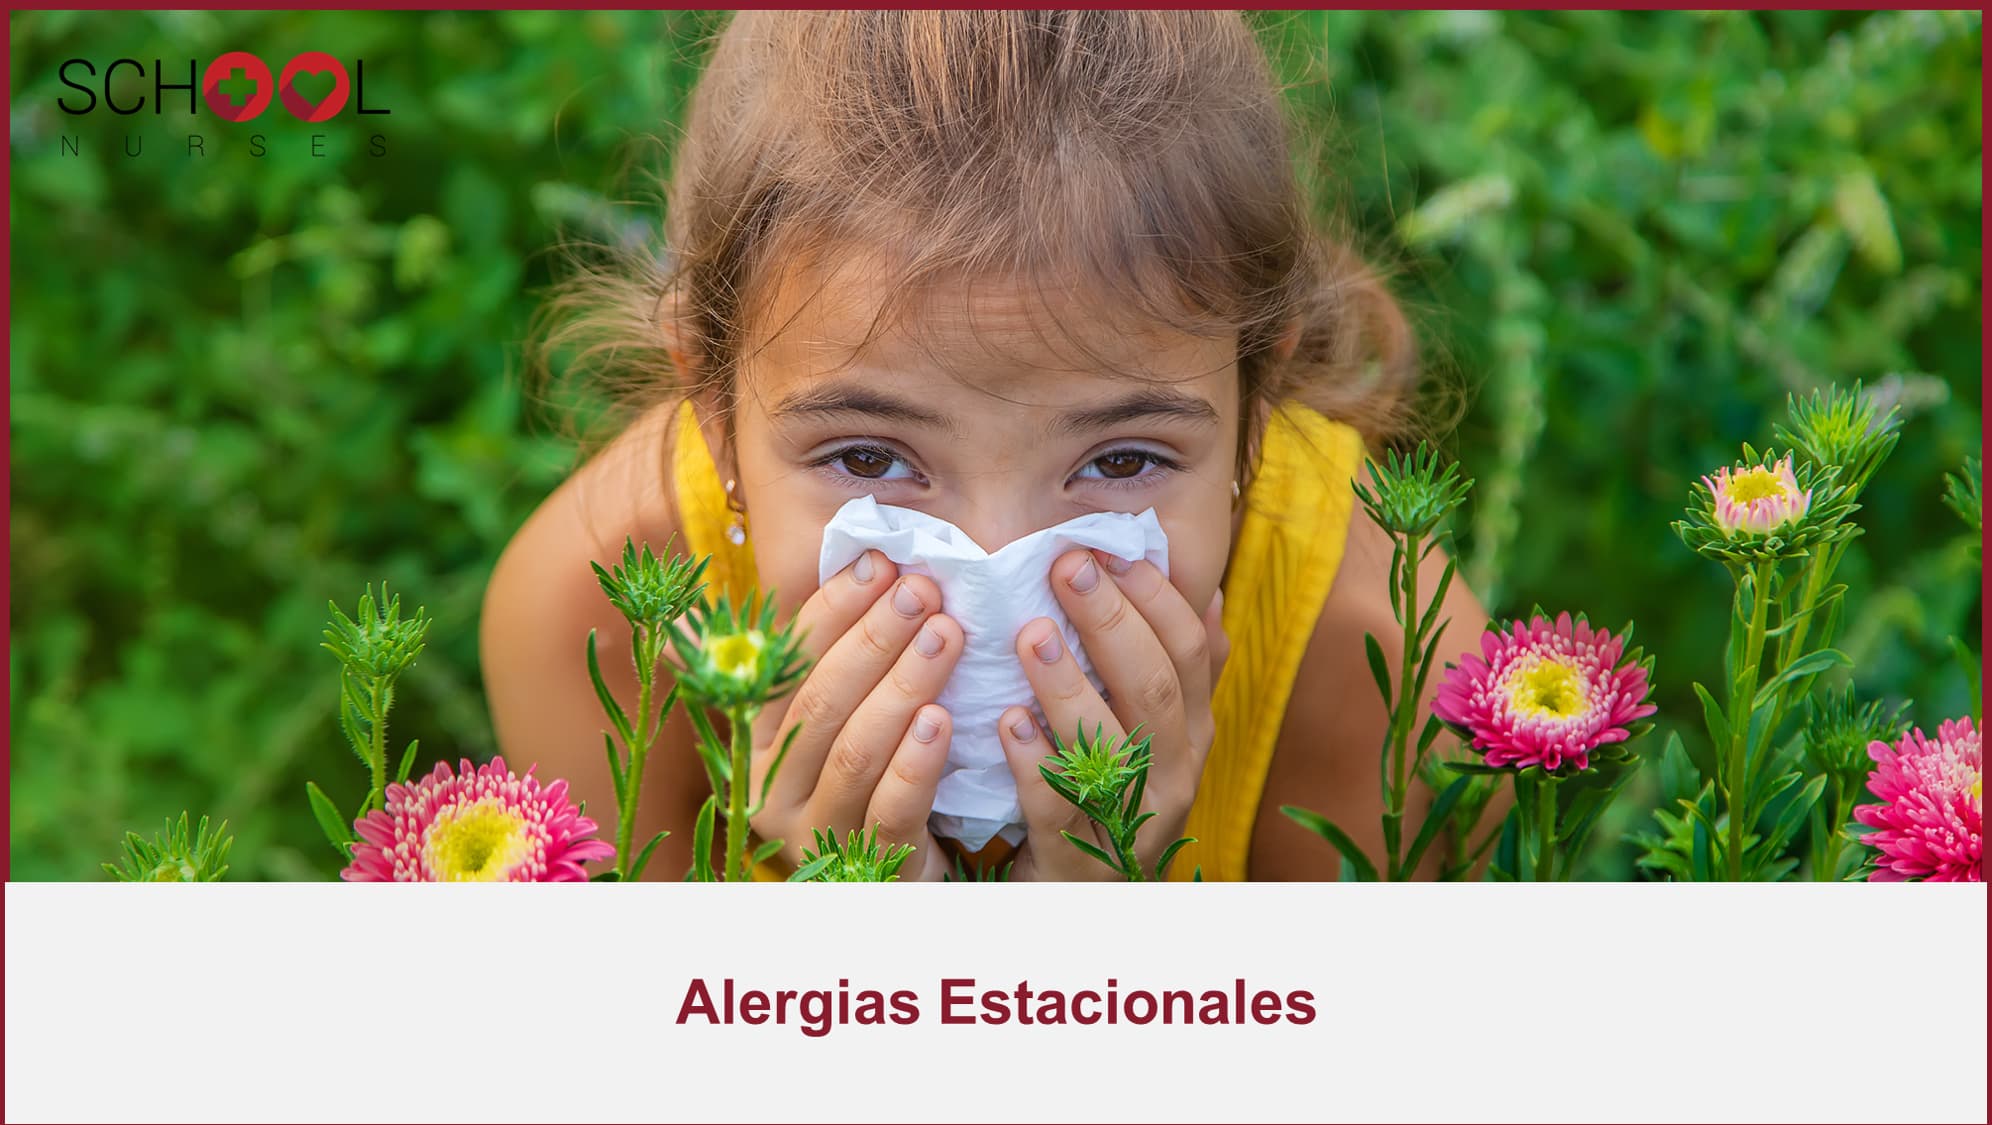 Como actuar ante alergias estacionales